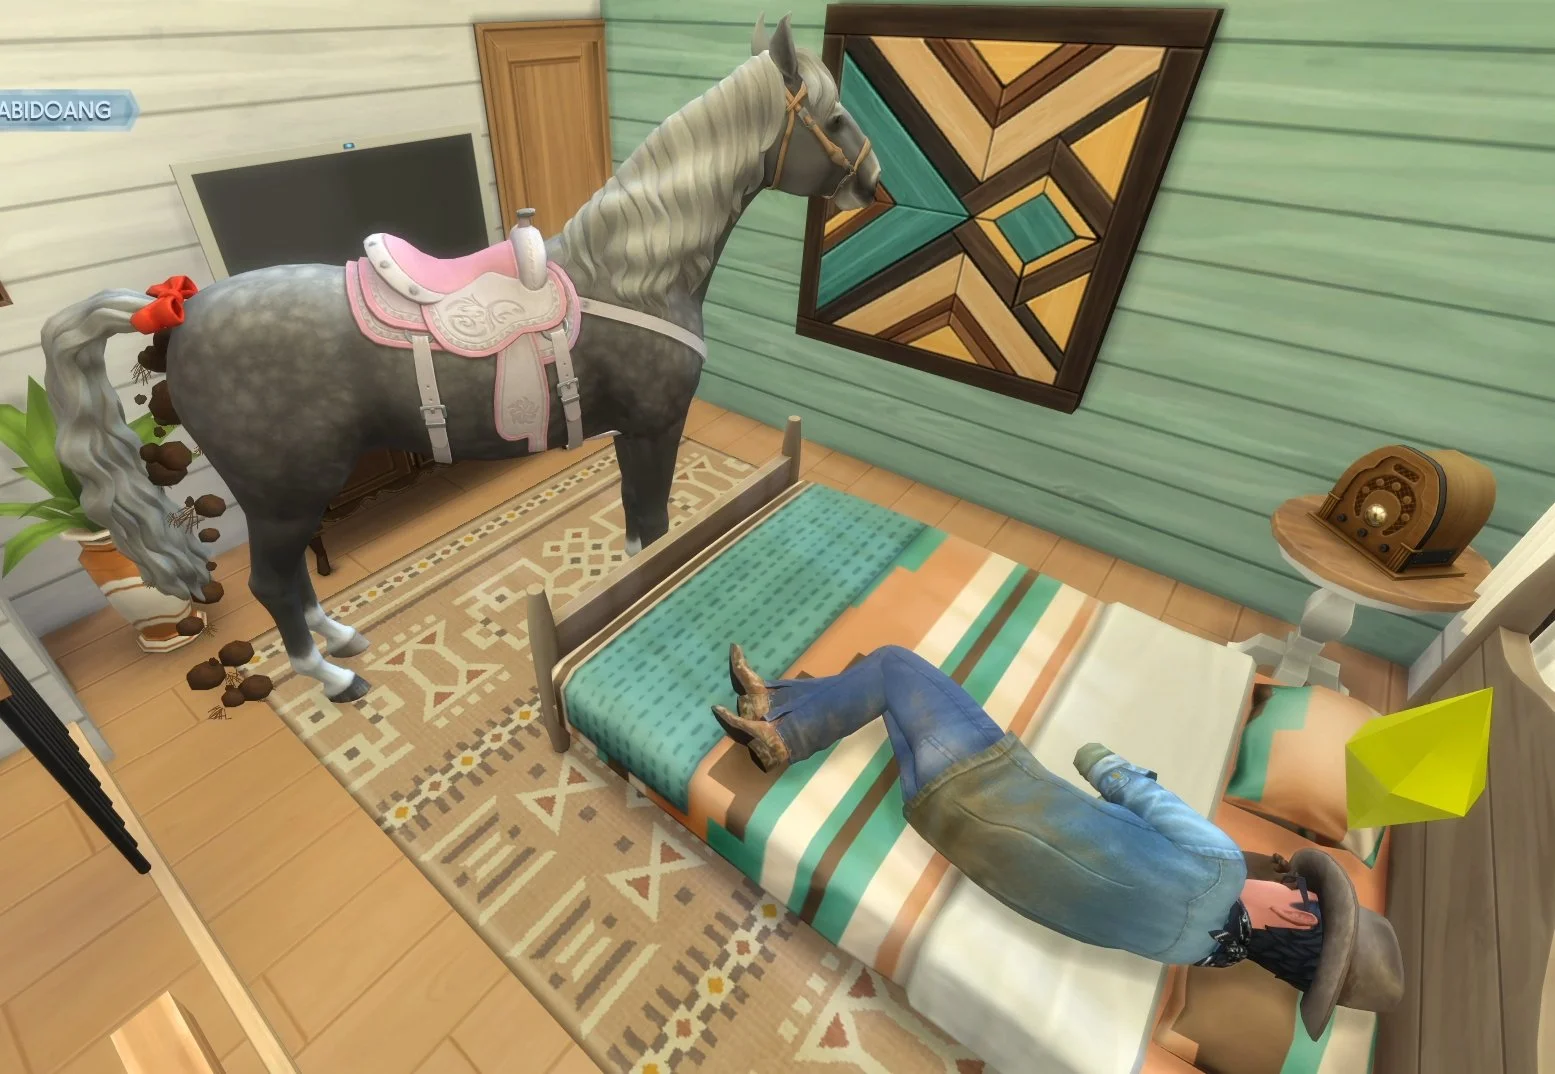 Баг в The Sims 4 позволил лошадям заходить в дома и наблюдать за жизнью симов - фото 1